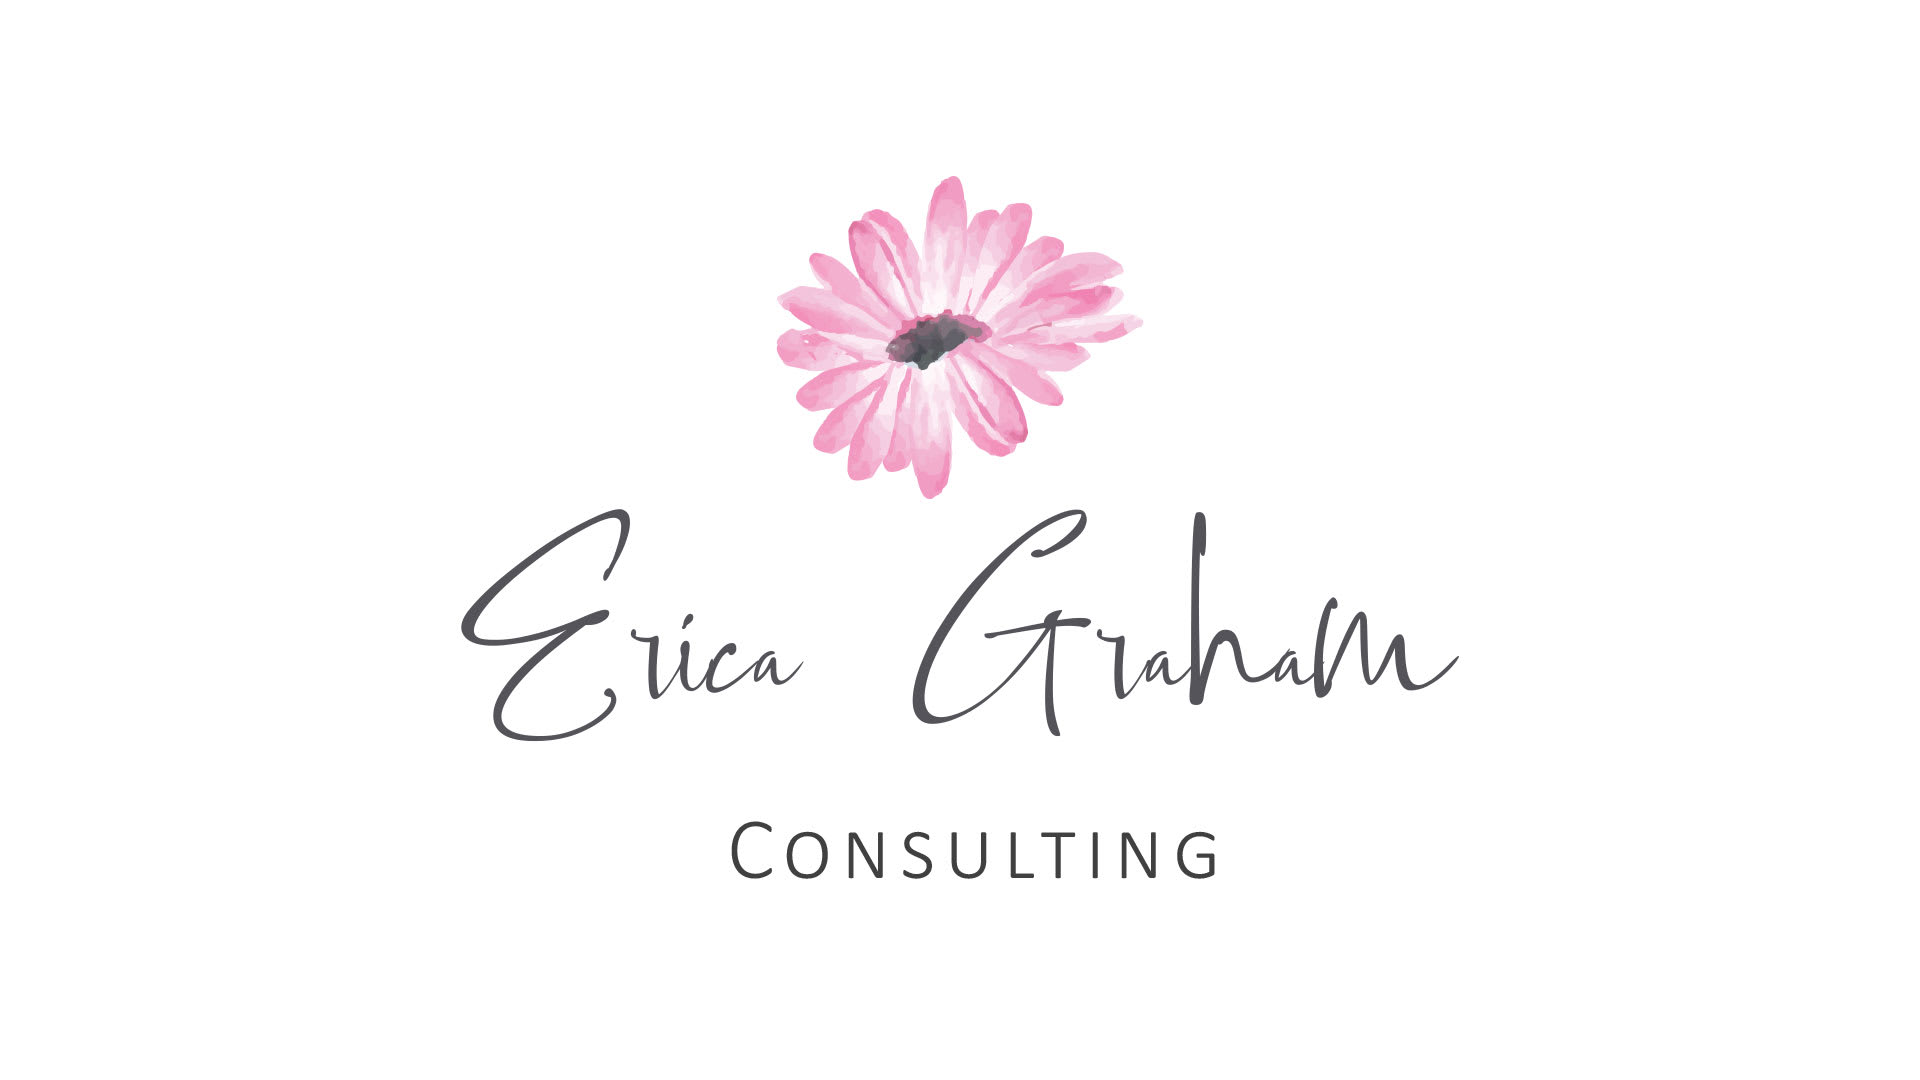 Erica Graham Consulting